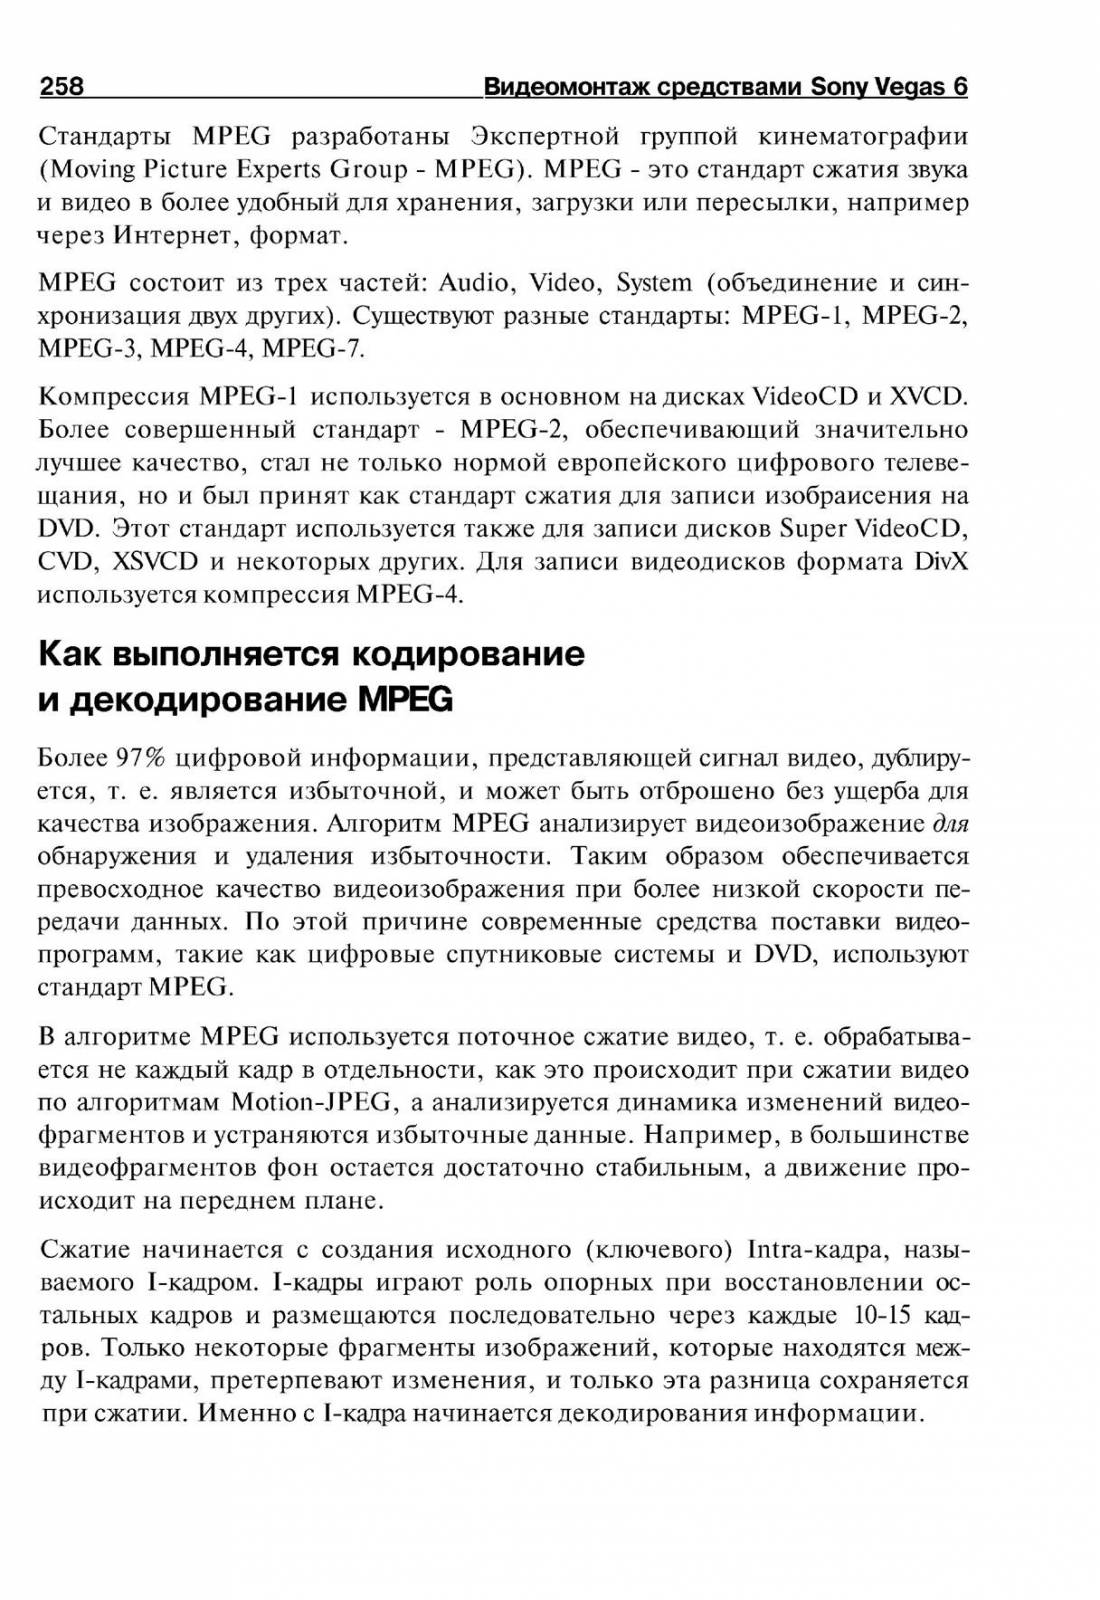 http://redaktori-uroki.3dn.ru/_ph/14/27536524.jpg